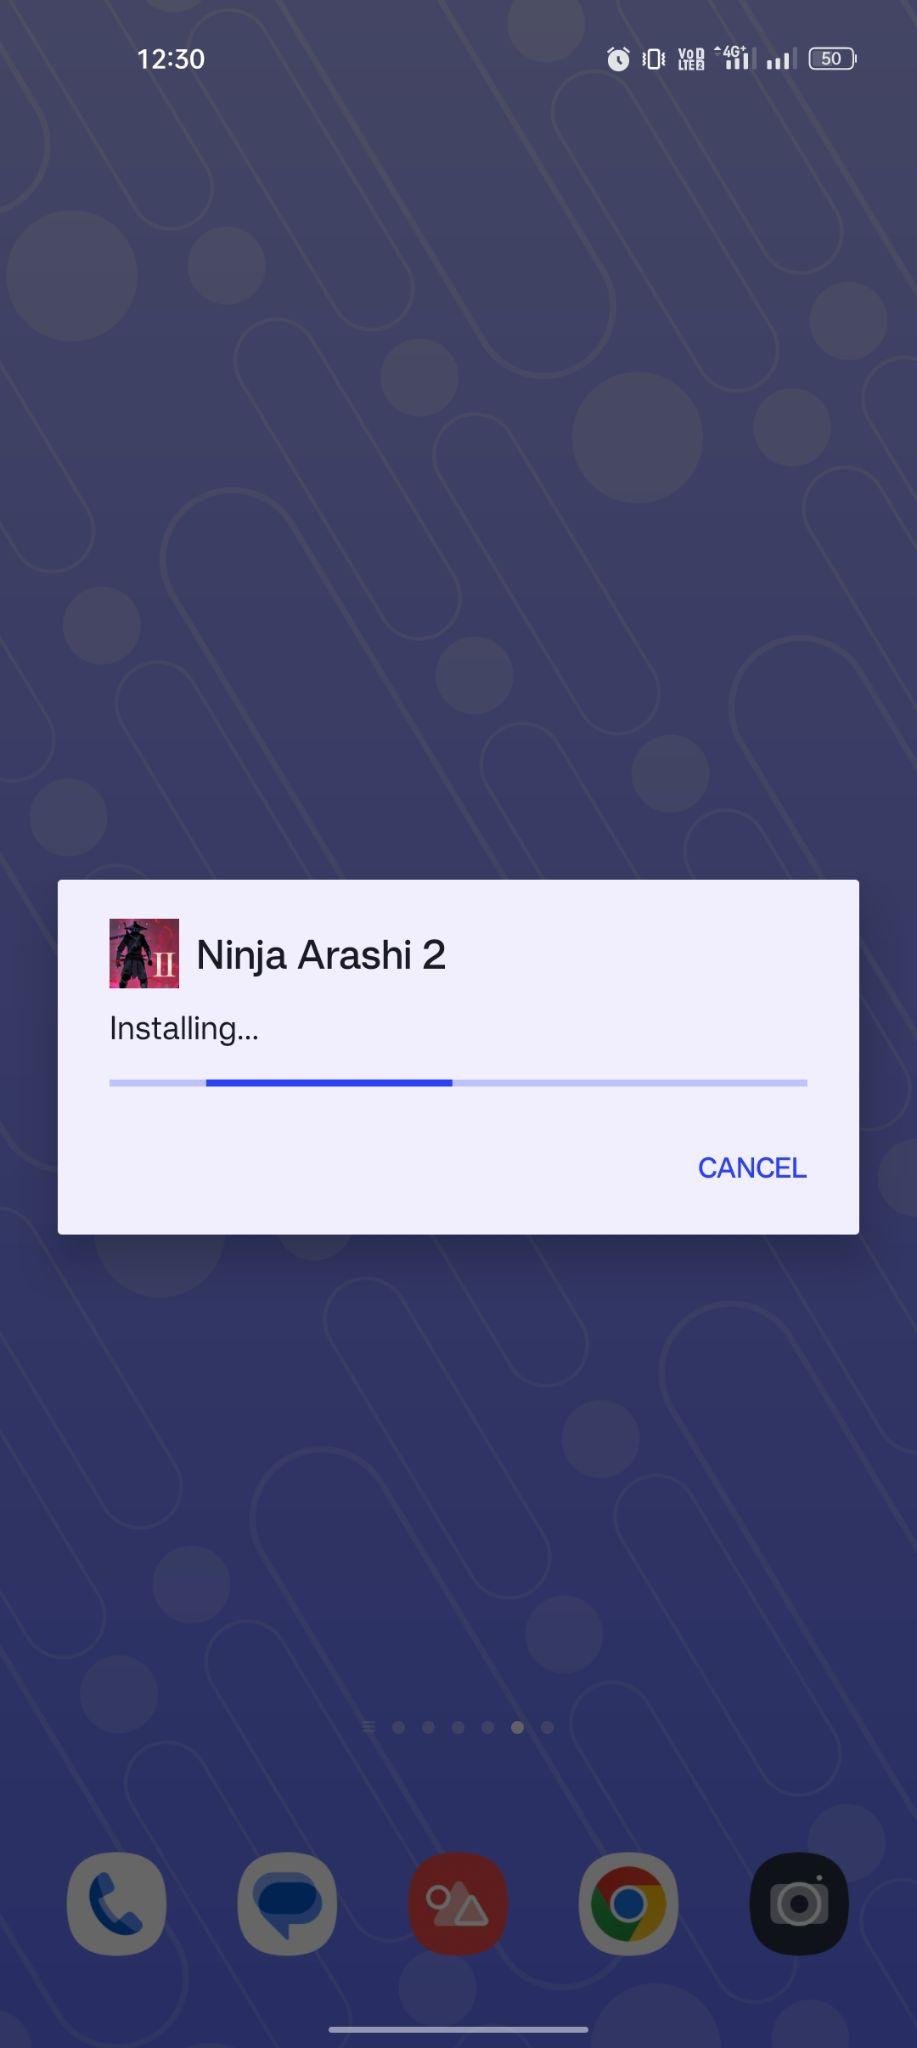 Ninja Arashi 2 apk installing